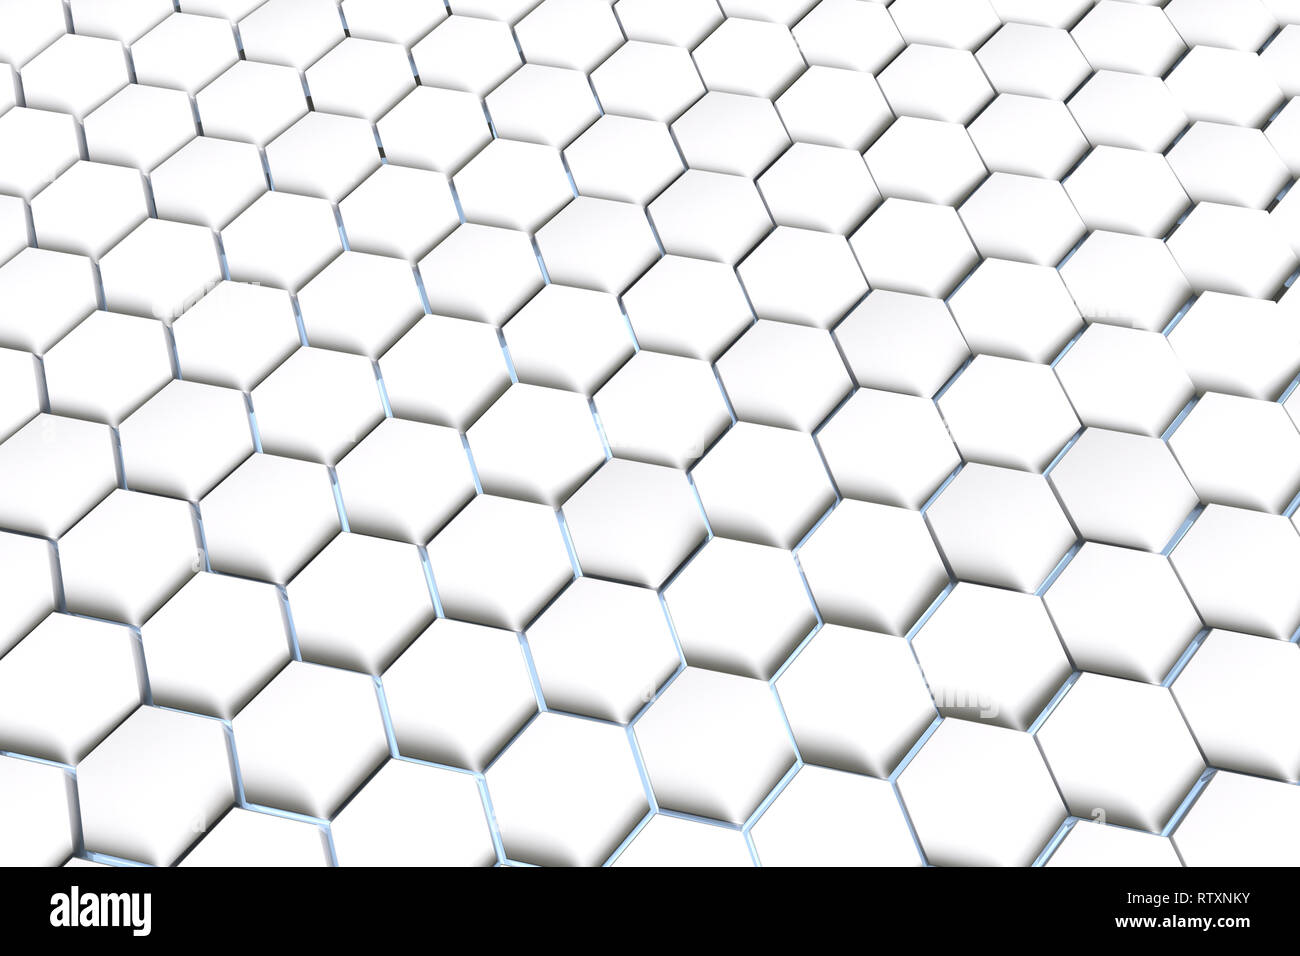 Le rendu 3D, l'arrière-plan hexagonal blanc Banque D'Images